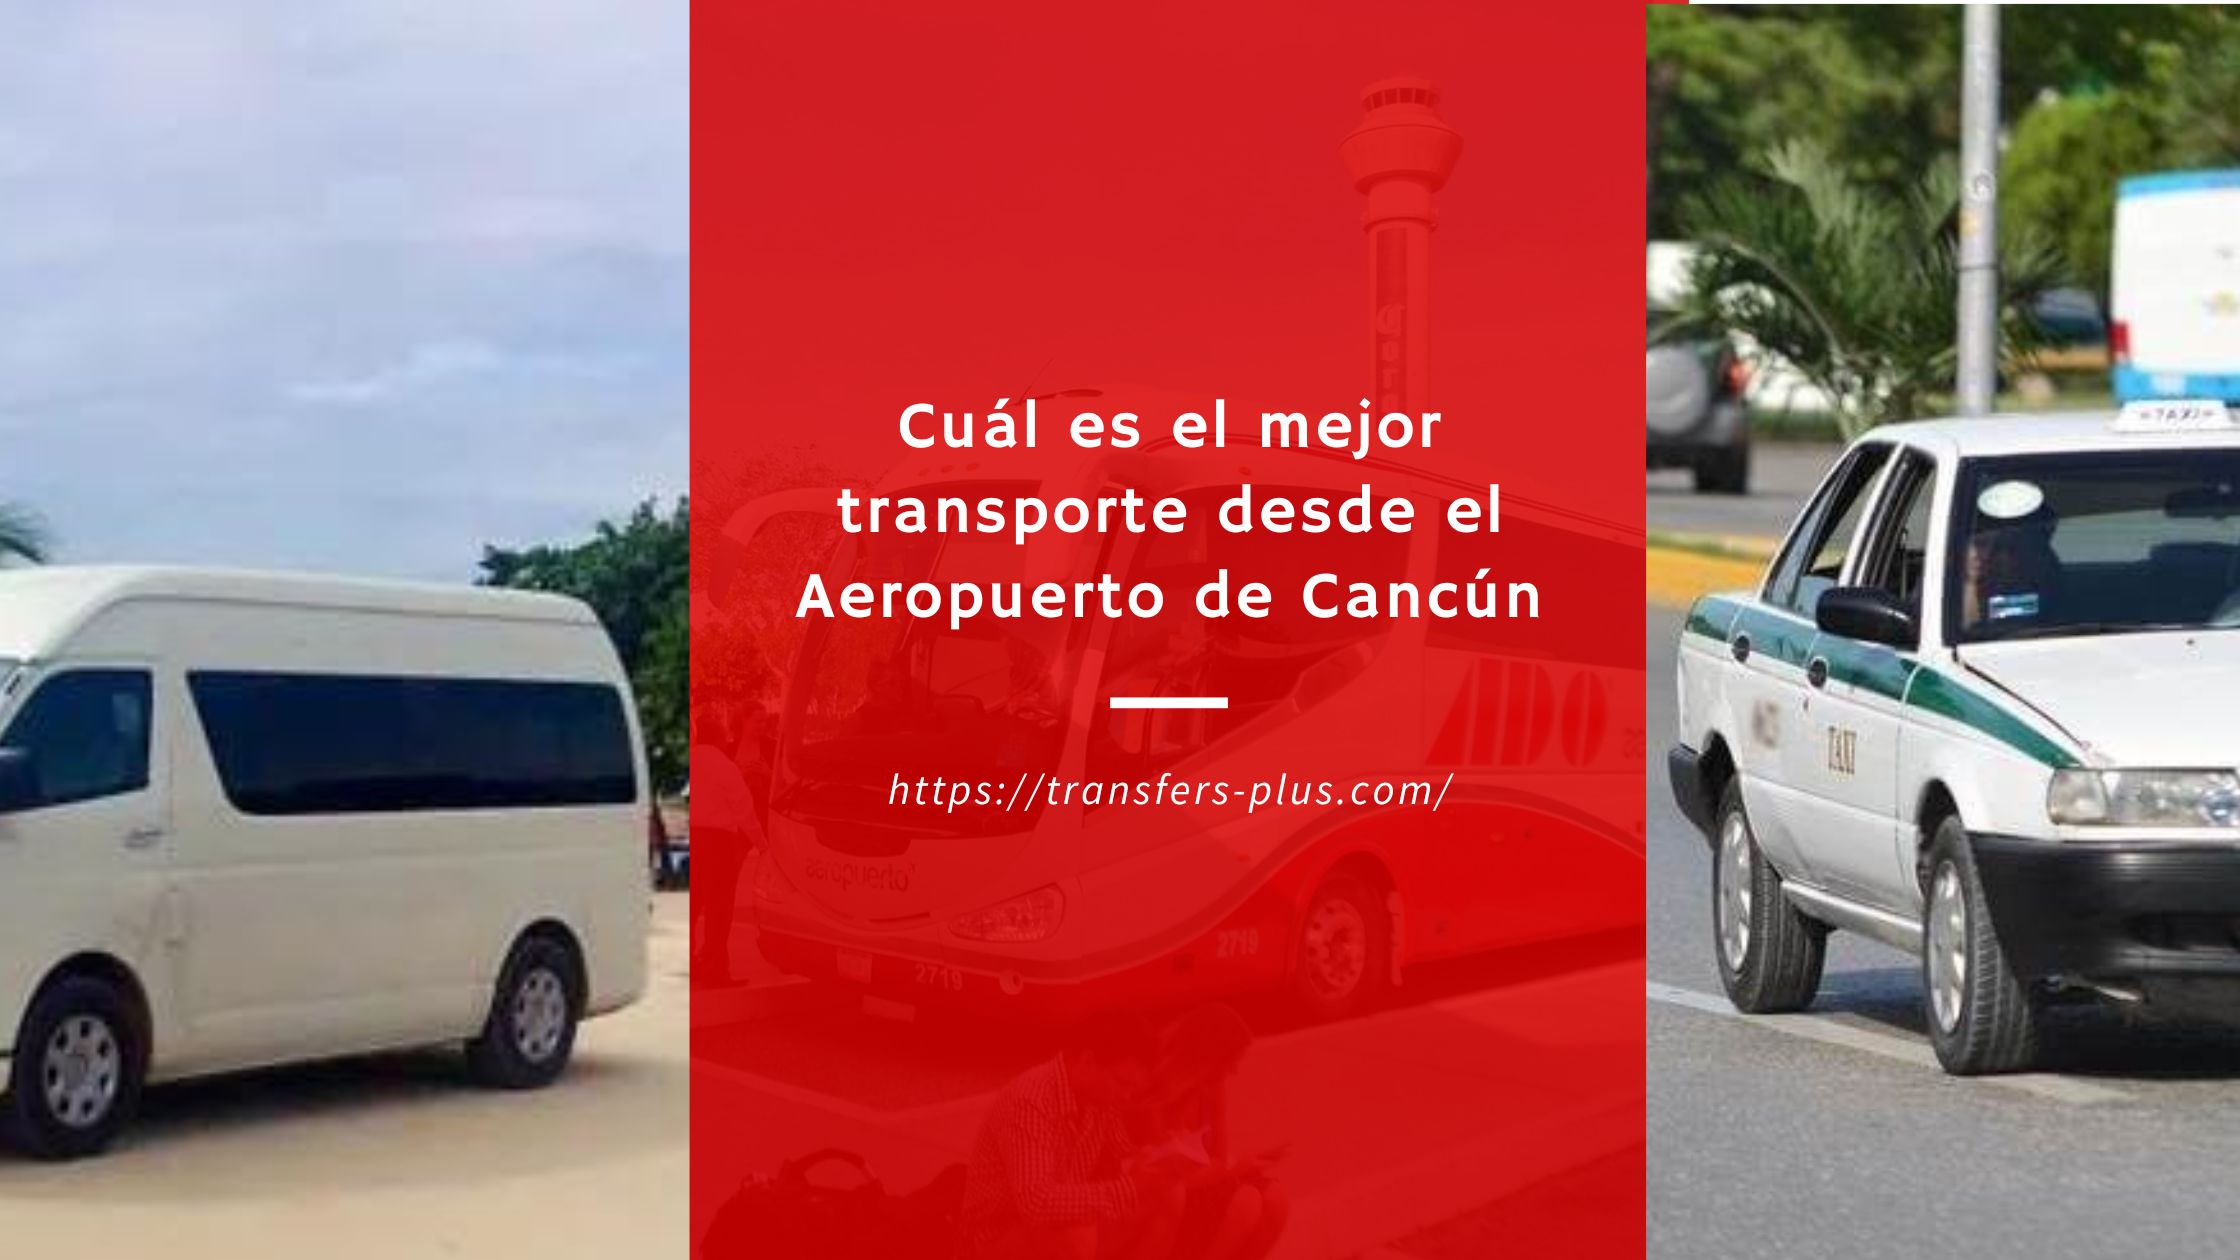 Cuál es el mejor transporte desde el Aeropuerto de Cancún